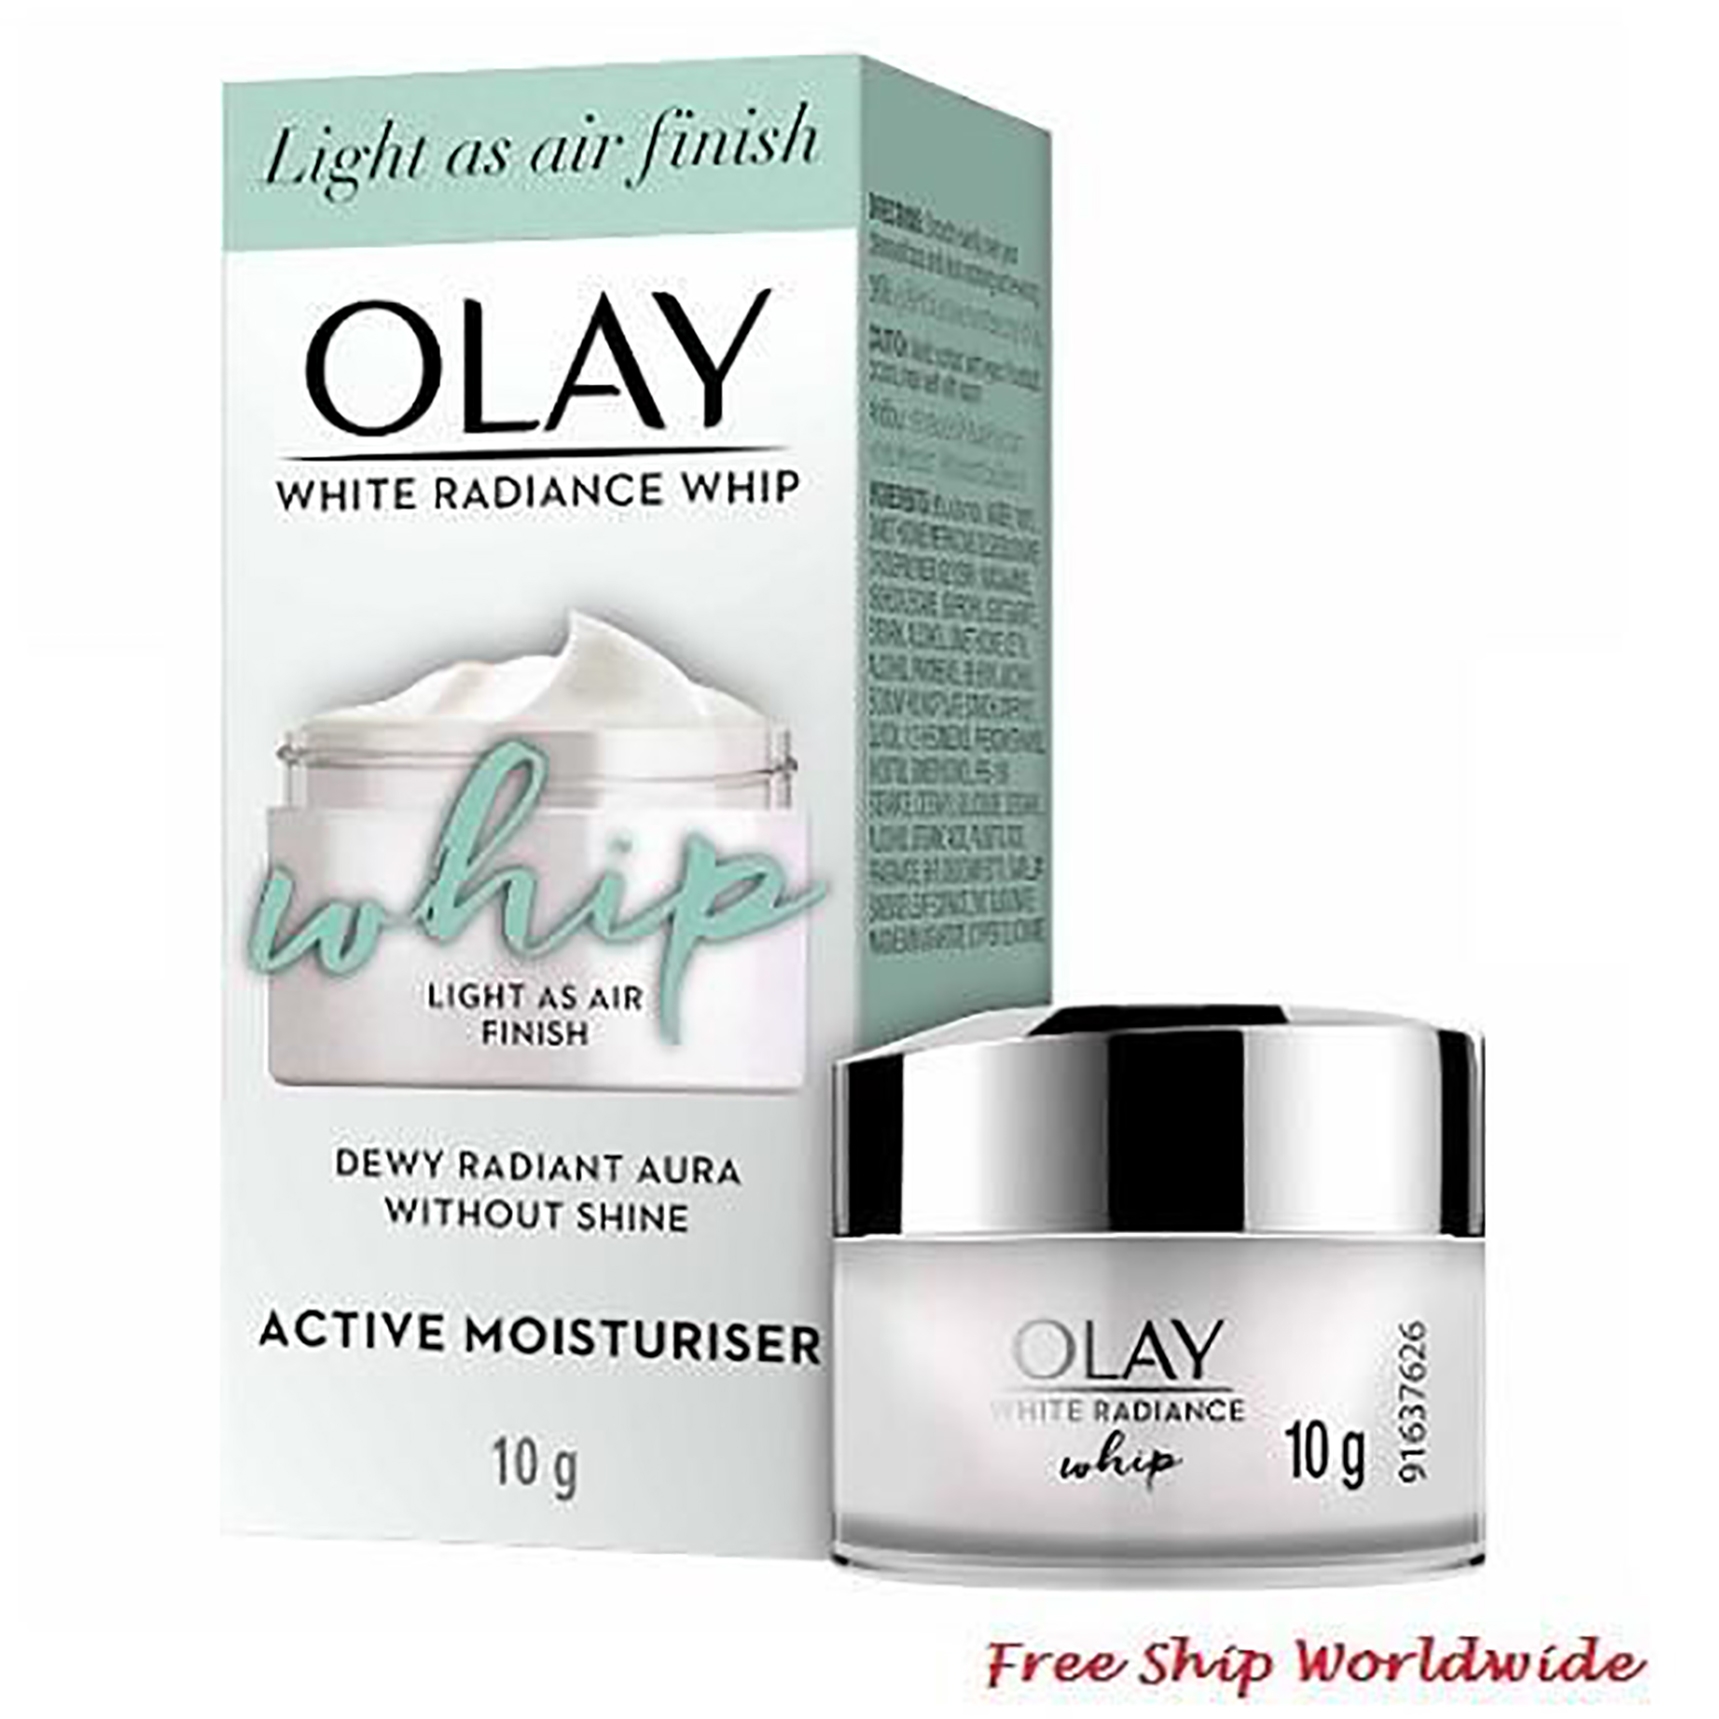 Olay White Radiance Whip Cream 10g